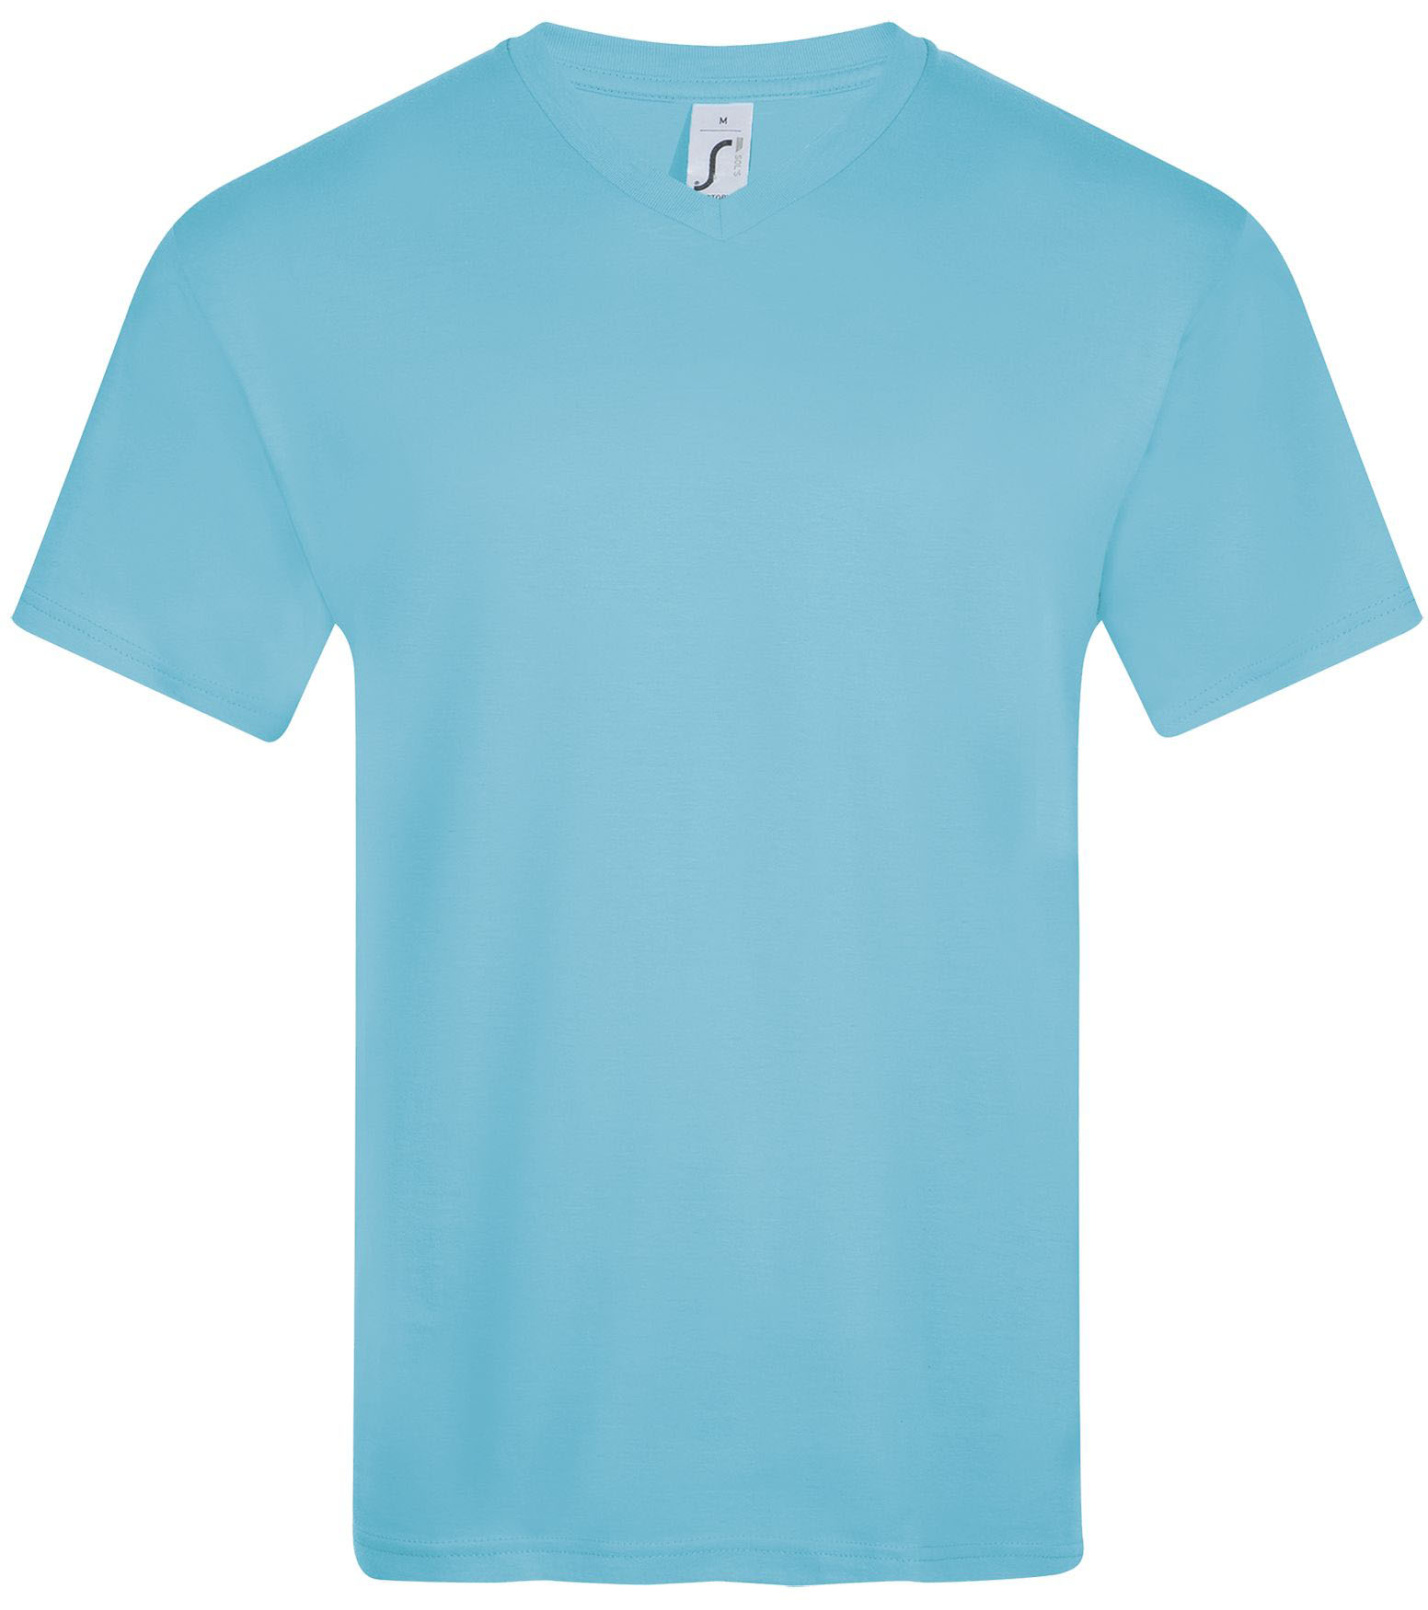 SOĽS Victory Pánske tričko SL11150 Atoll blue S